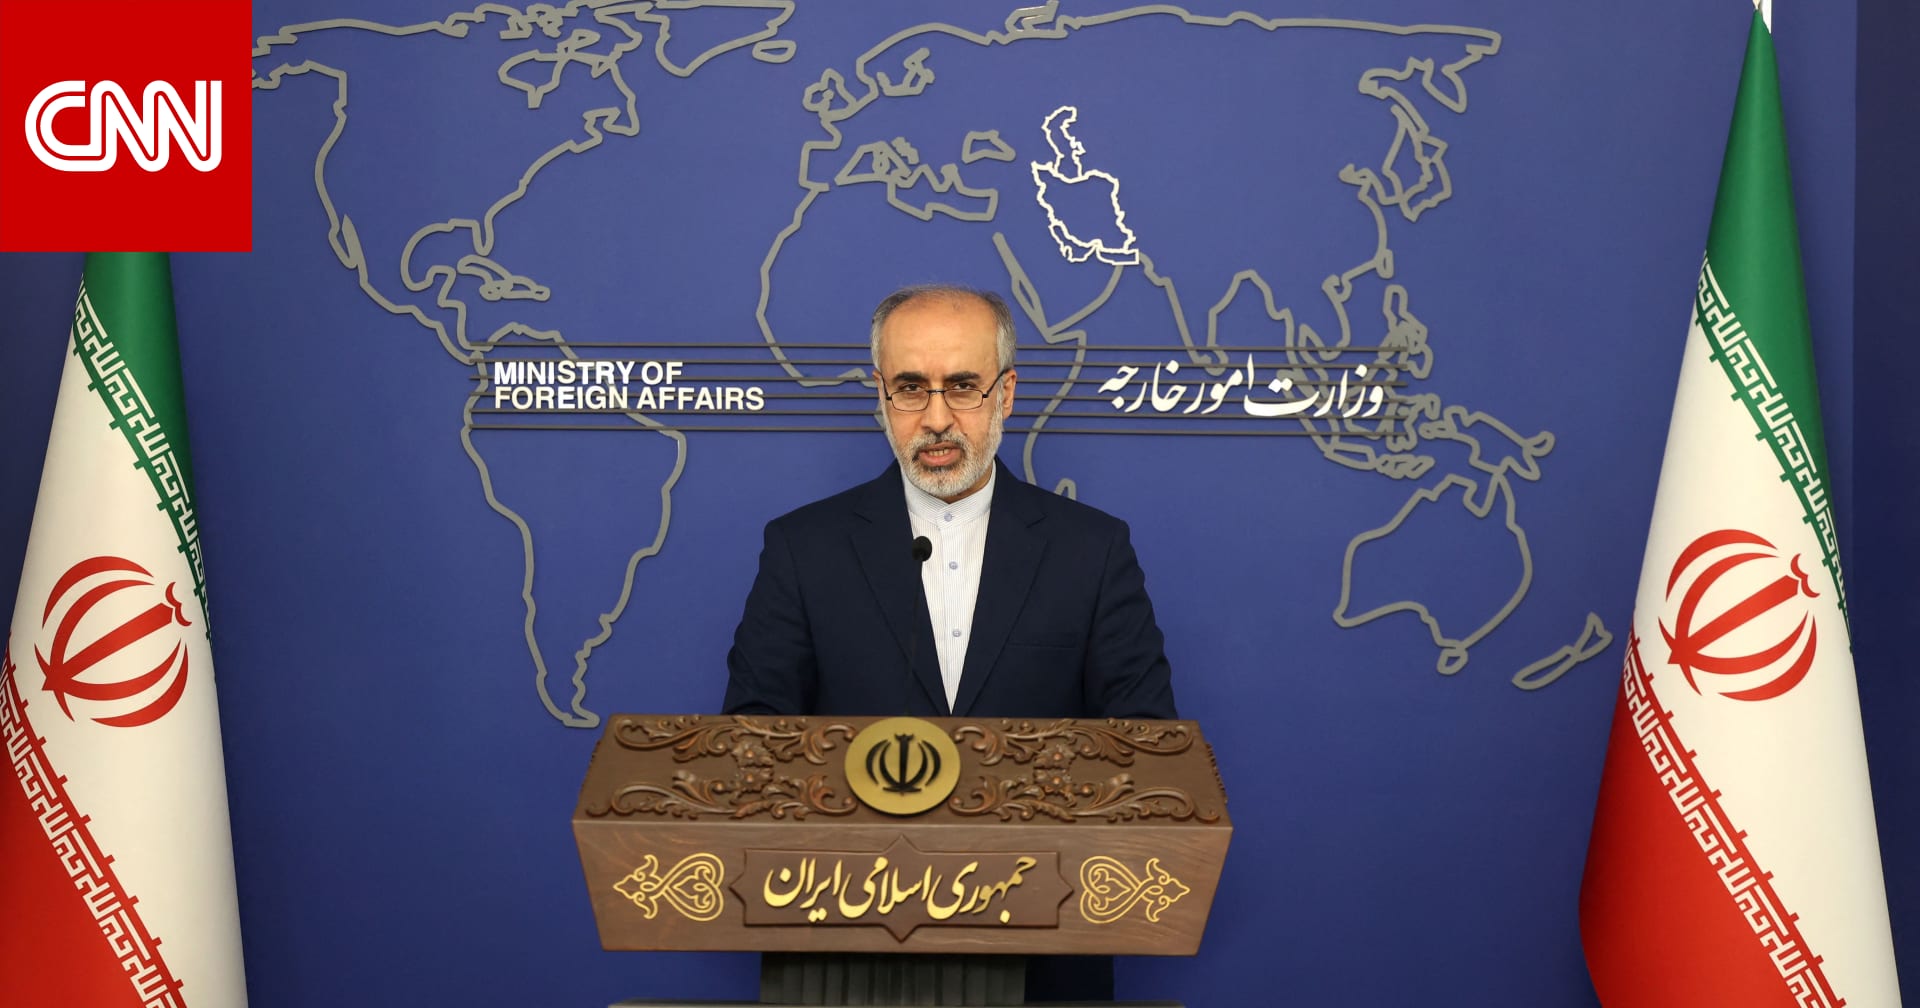 "ليس لدينا إجابة دقيقة".. خارجية إيران عن موعد إعادة فتح السفارة السعودية بطهران